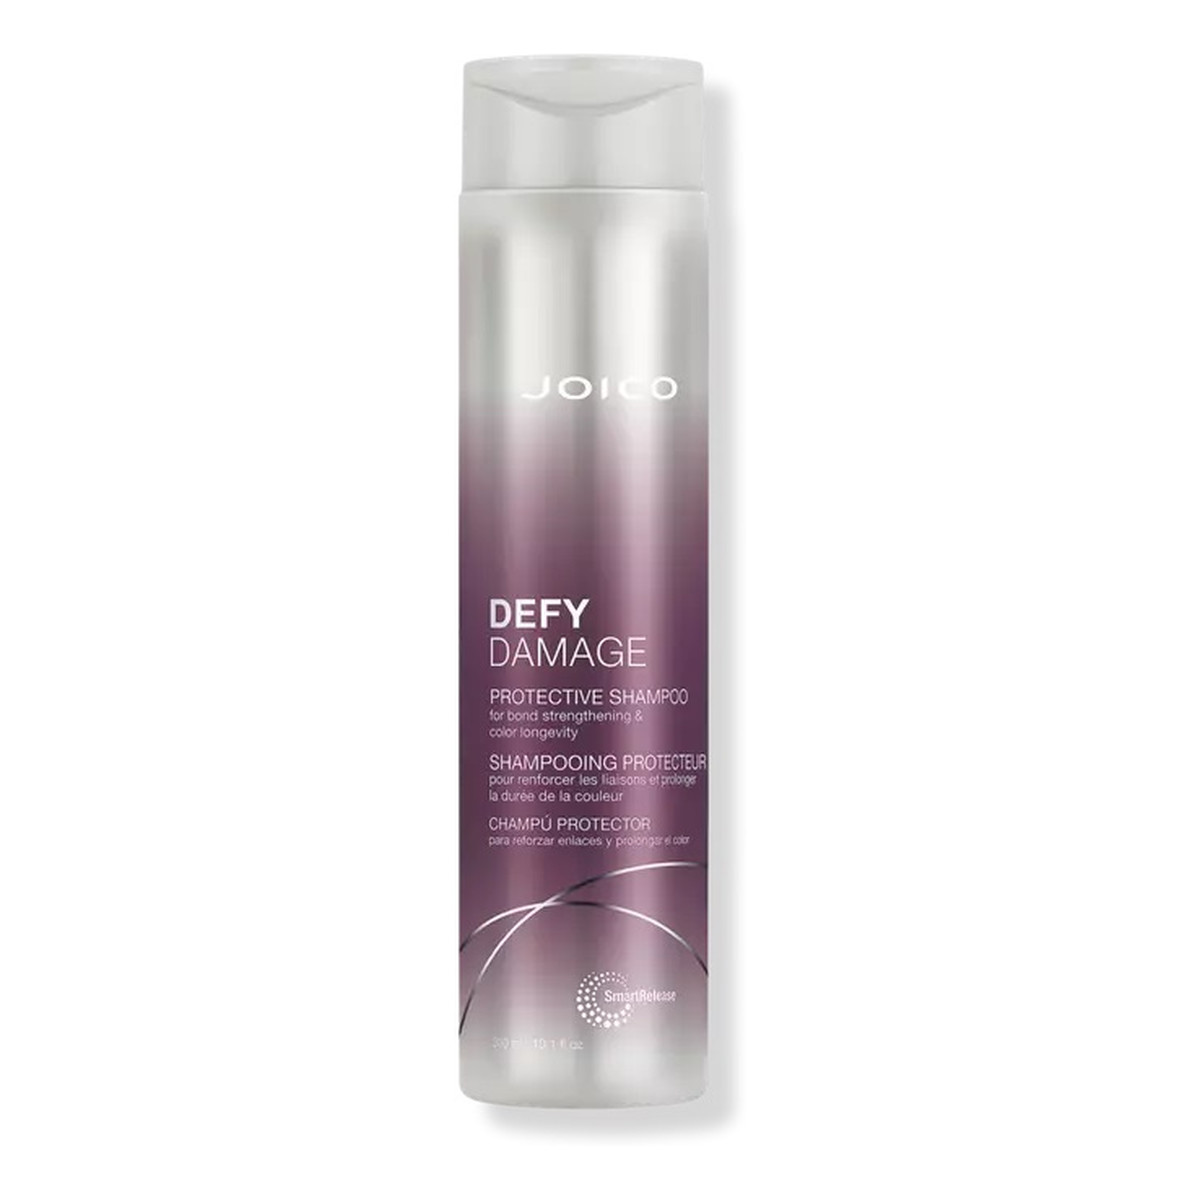 Joico Defy damage protective shampoo szampon do włosów farbowanych 300ml